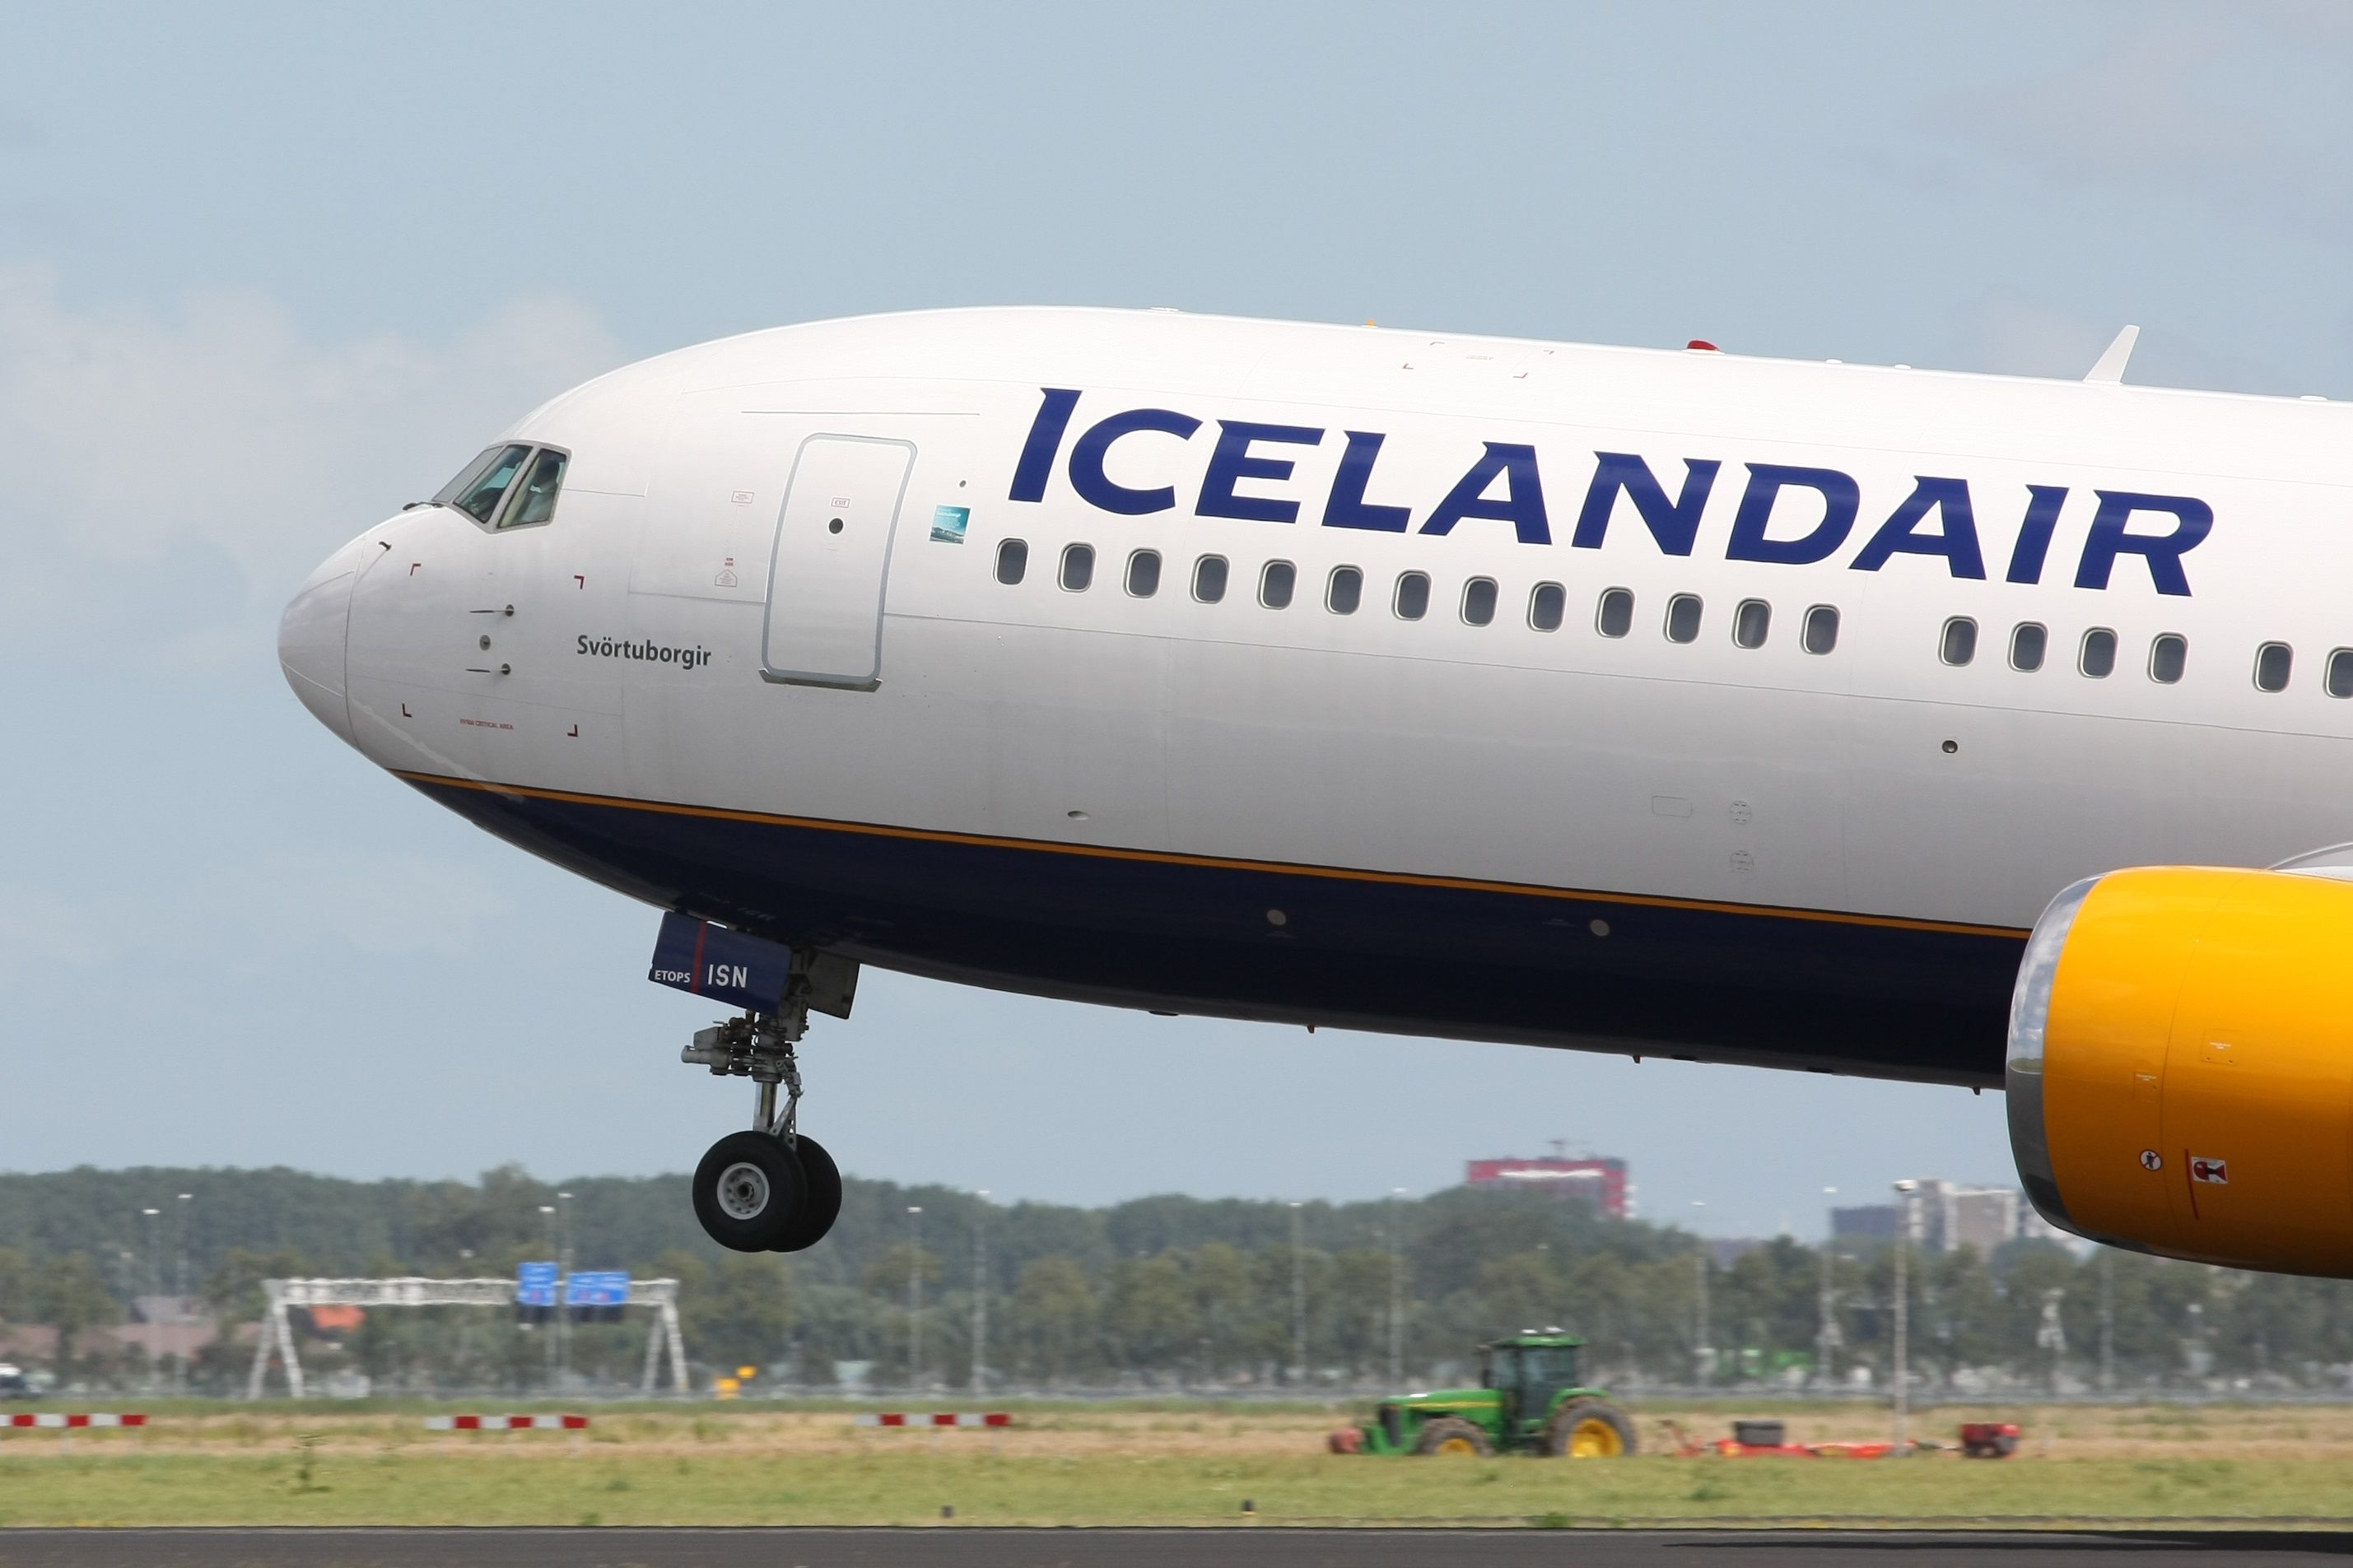 Icelandair TF-ISN 767 landing